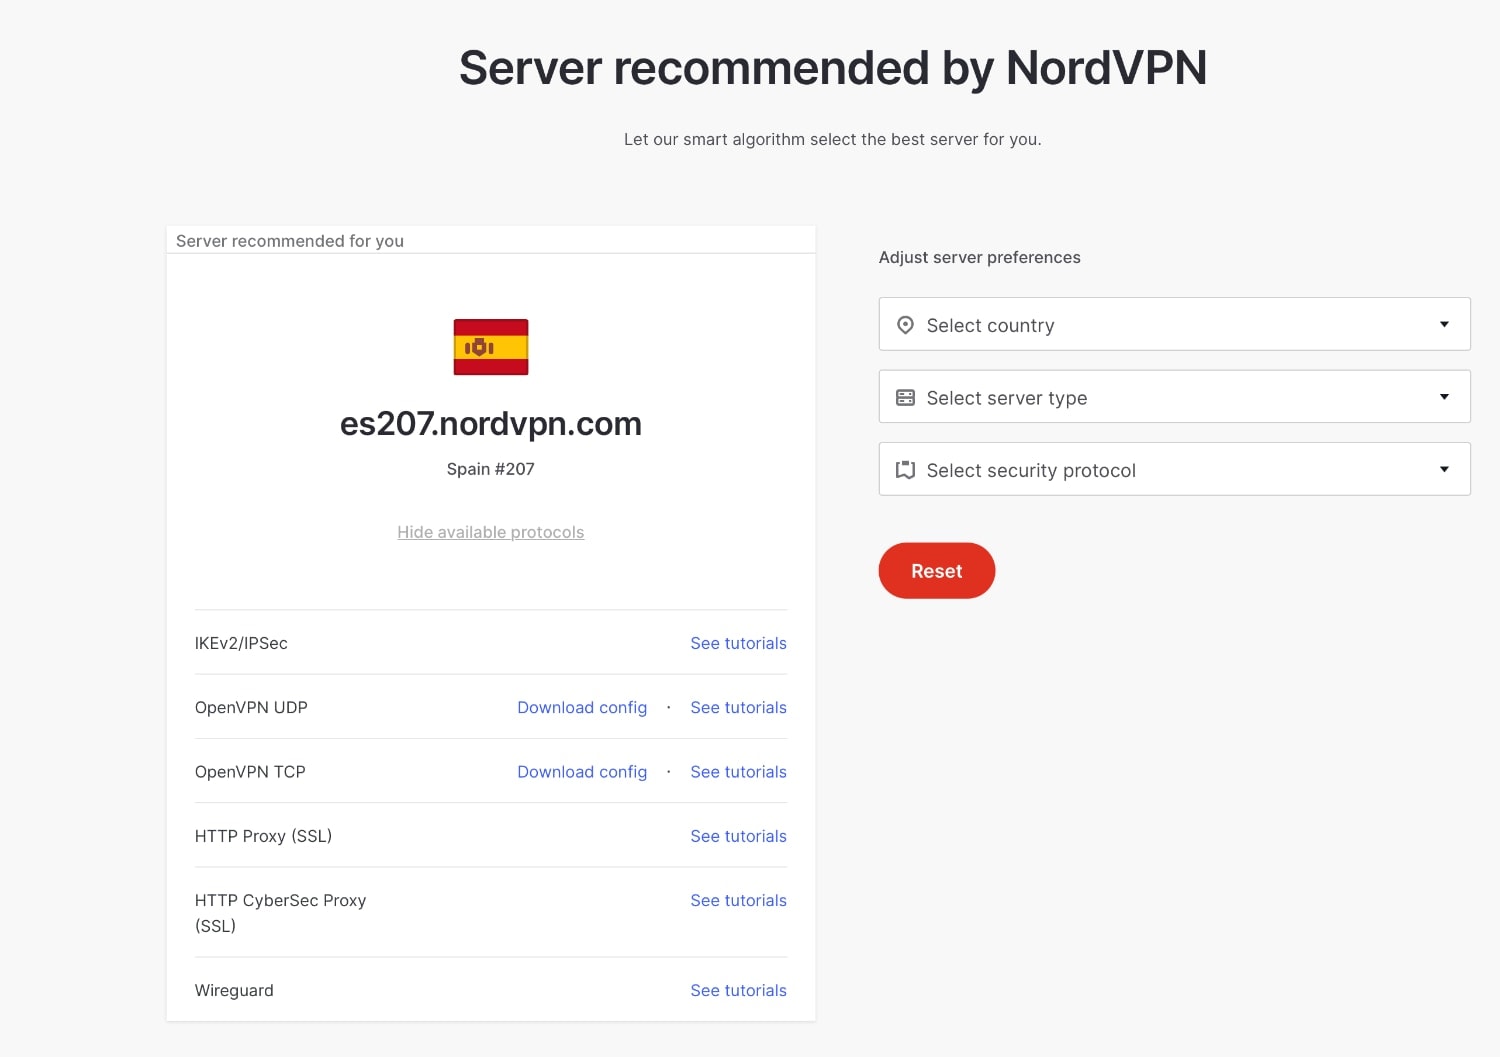 Recomendación de mejores servidores para conectarte en NordVPN